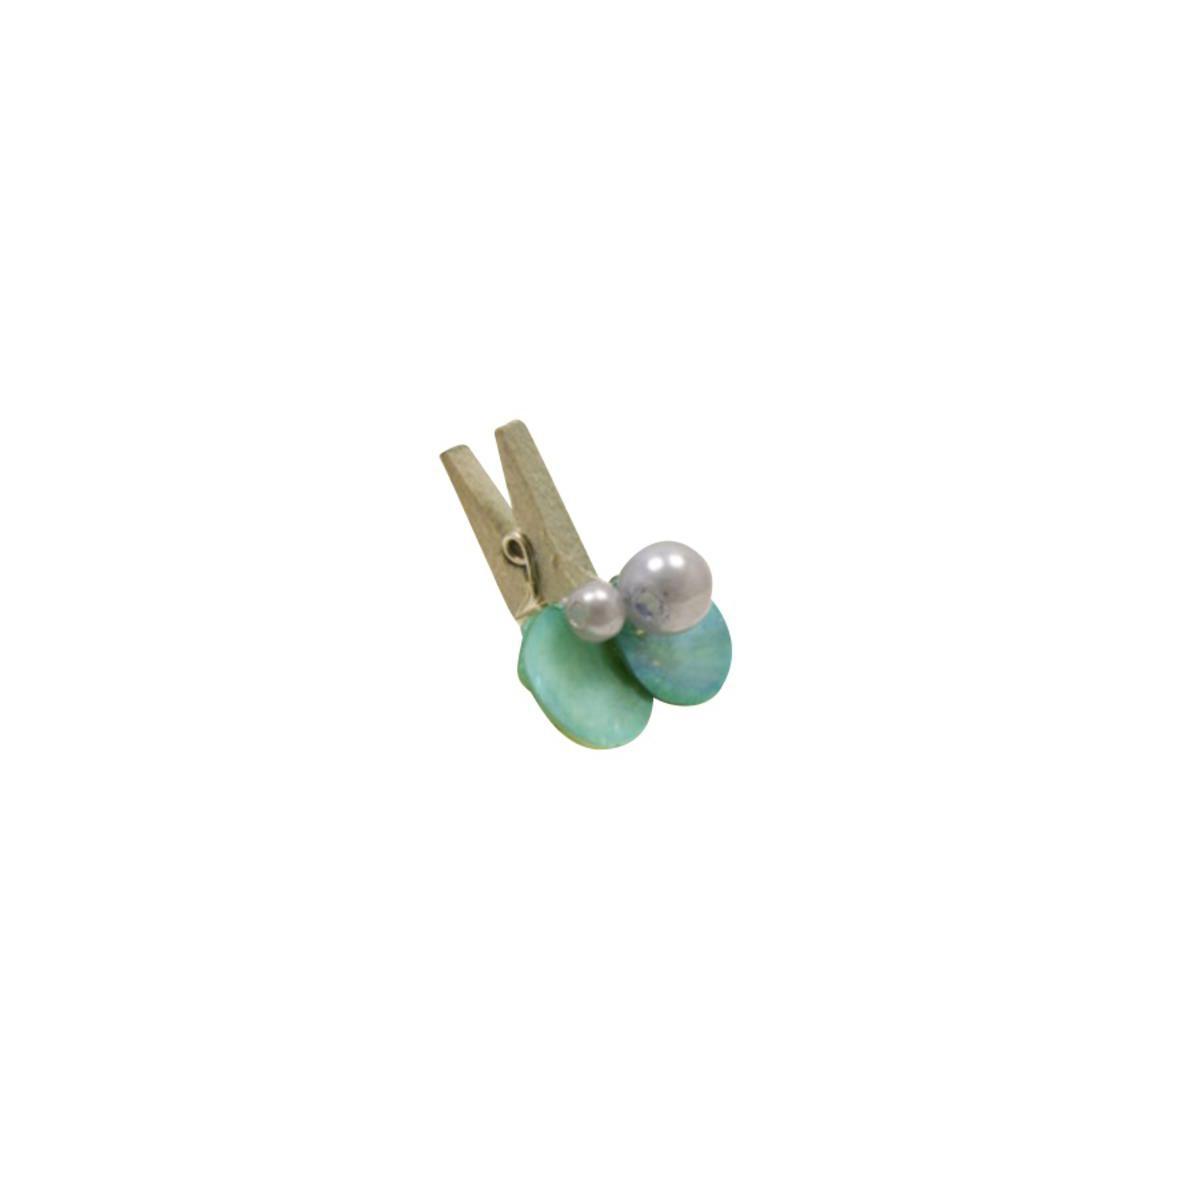 Pince décorative perle - Bois et plastique - Bleu turquoise